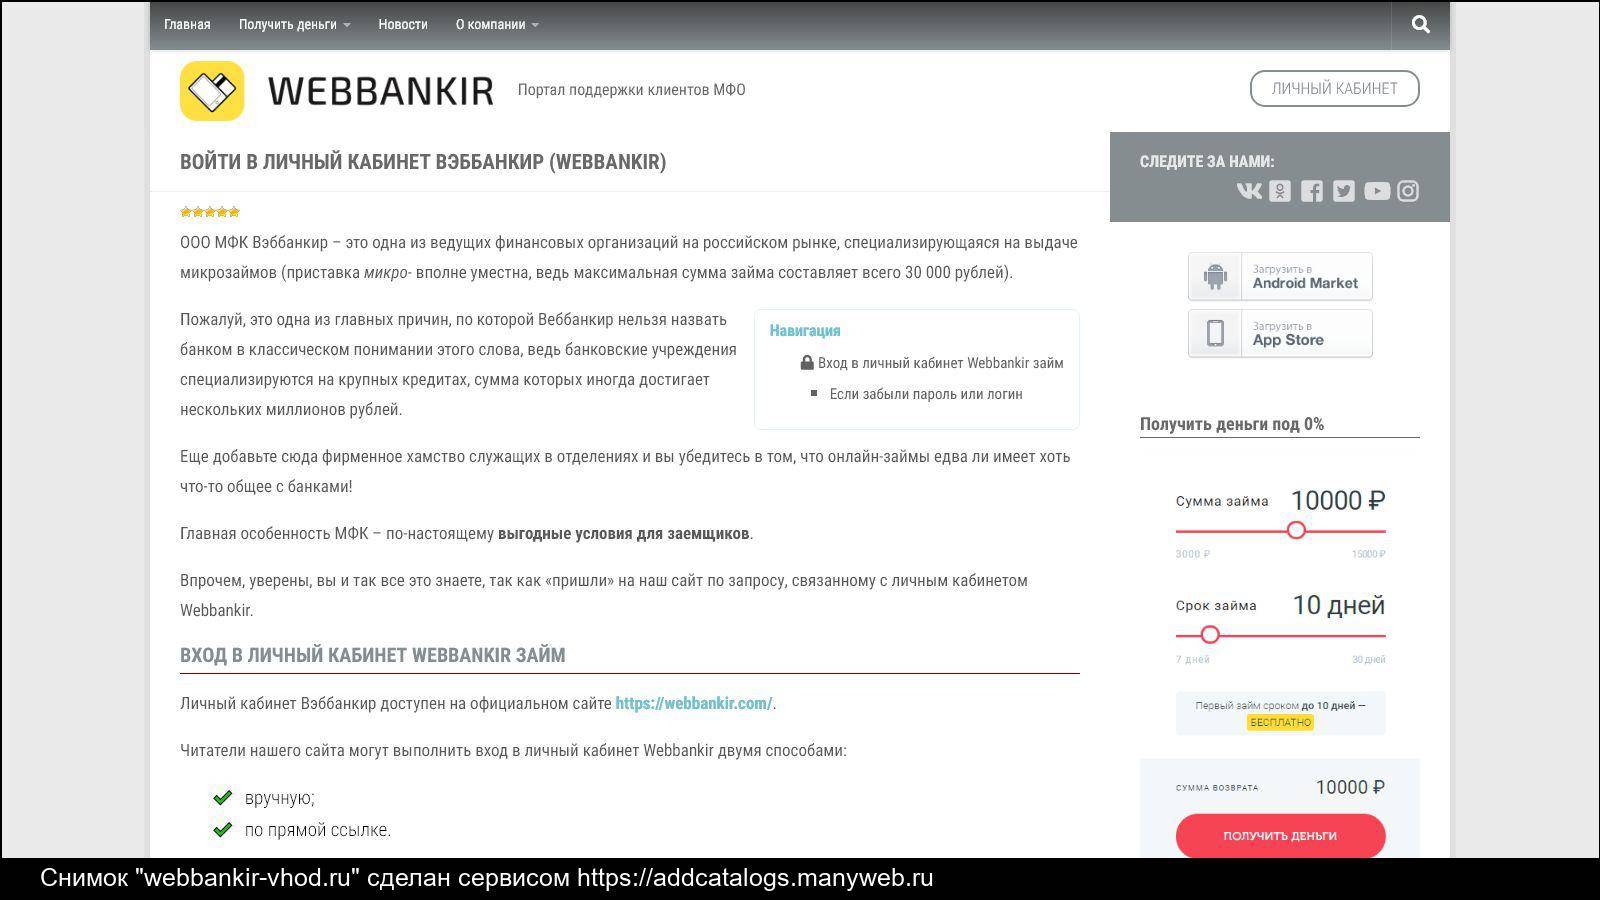 Веббанкир: обзор мфо, как взять онлайн займ